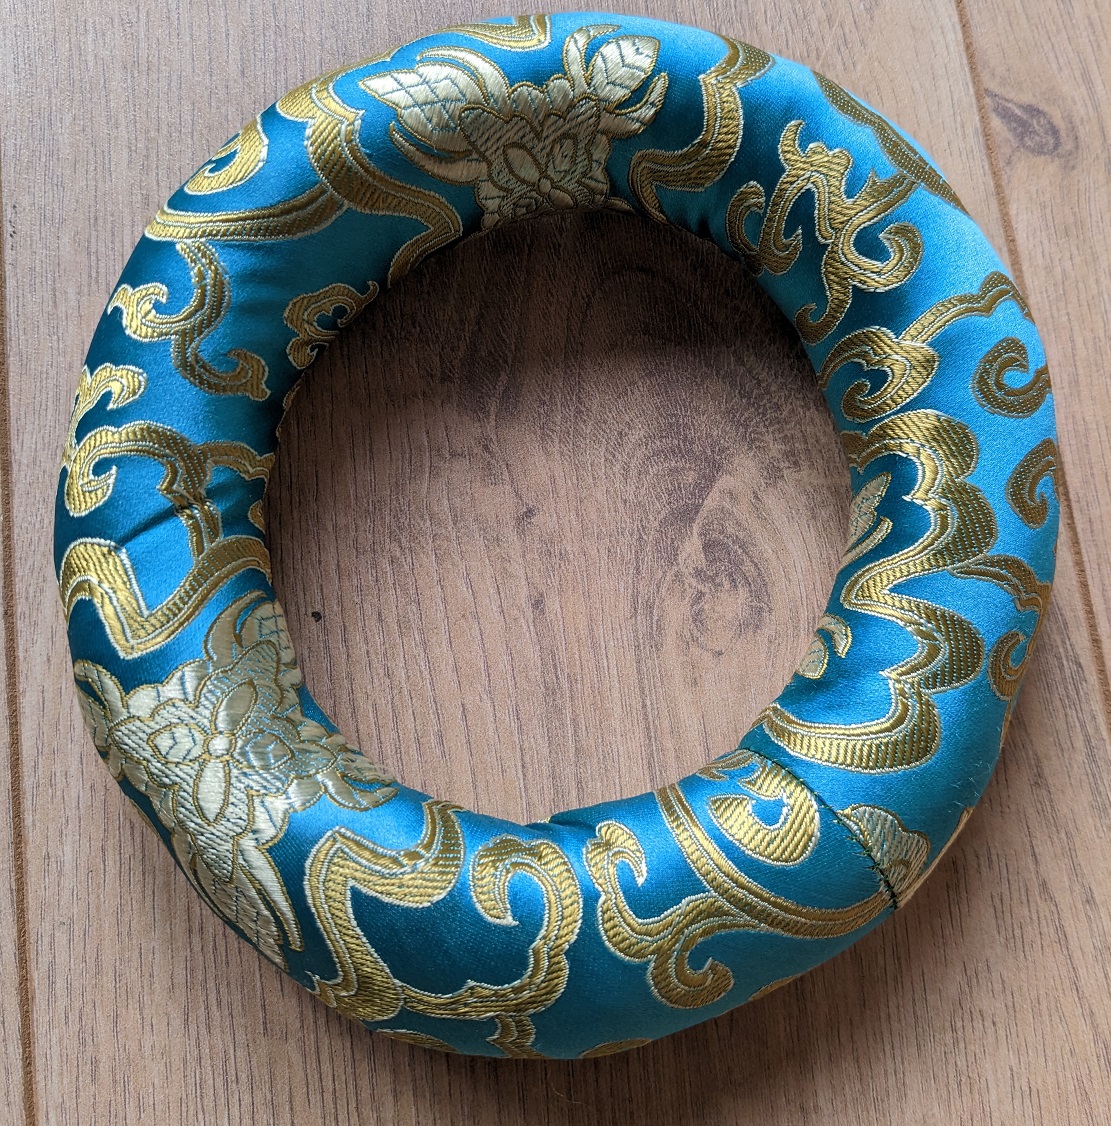 Tibetan Bowl Ring Cushion 16cm Diameter Turquoise